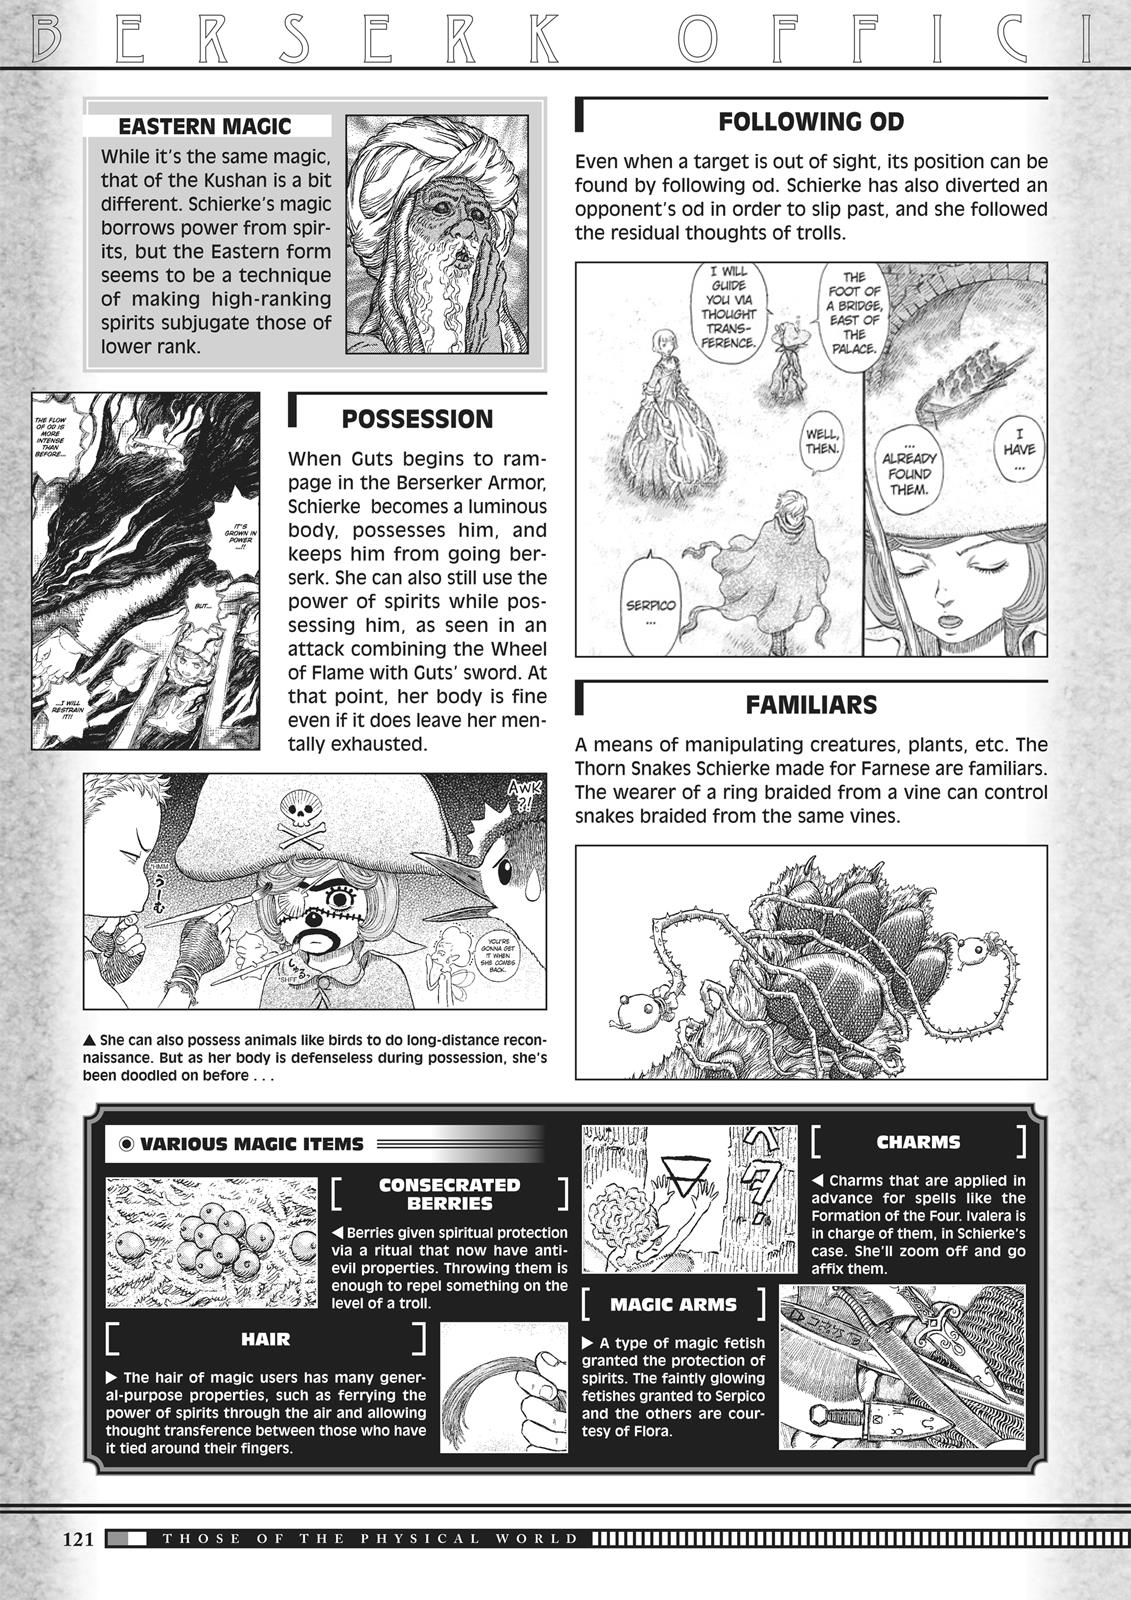 Berserk Manga Chapter 350.5 image 119